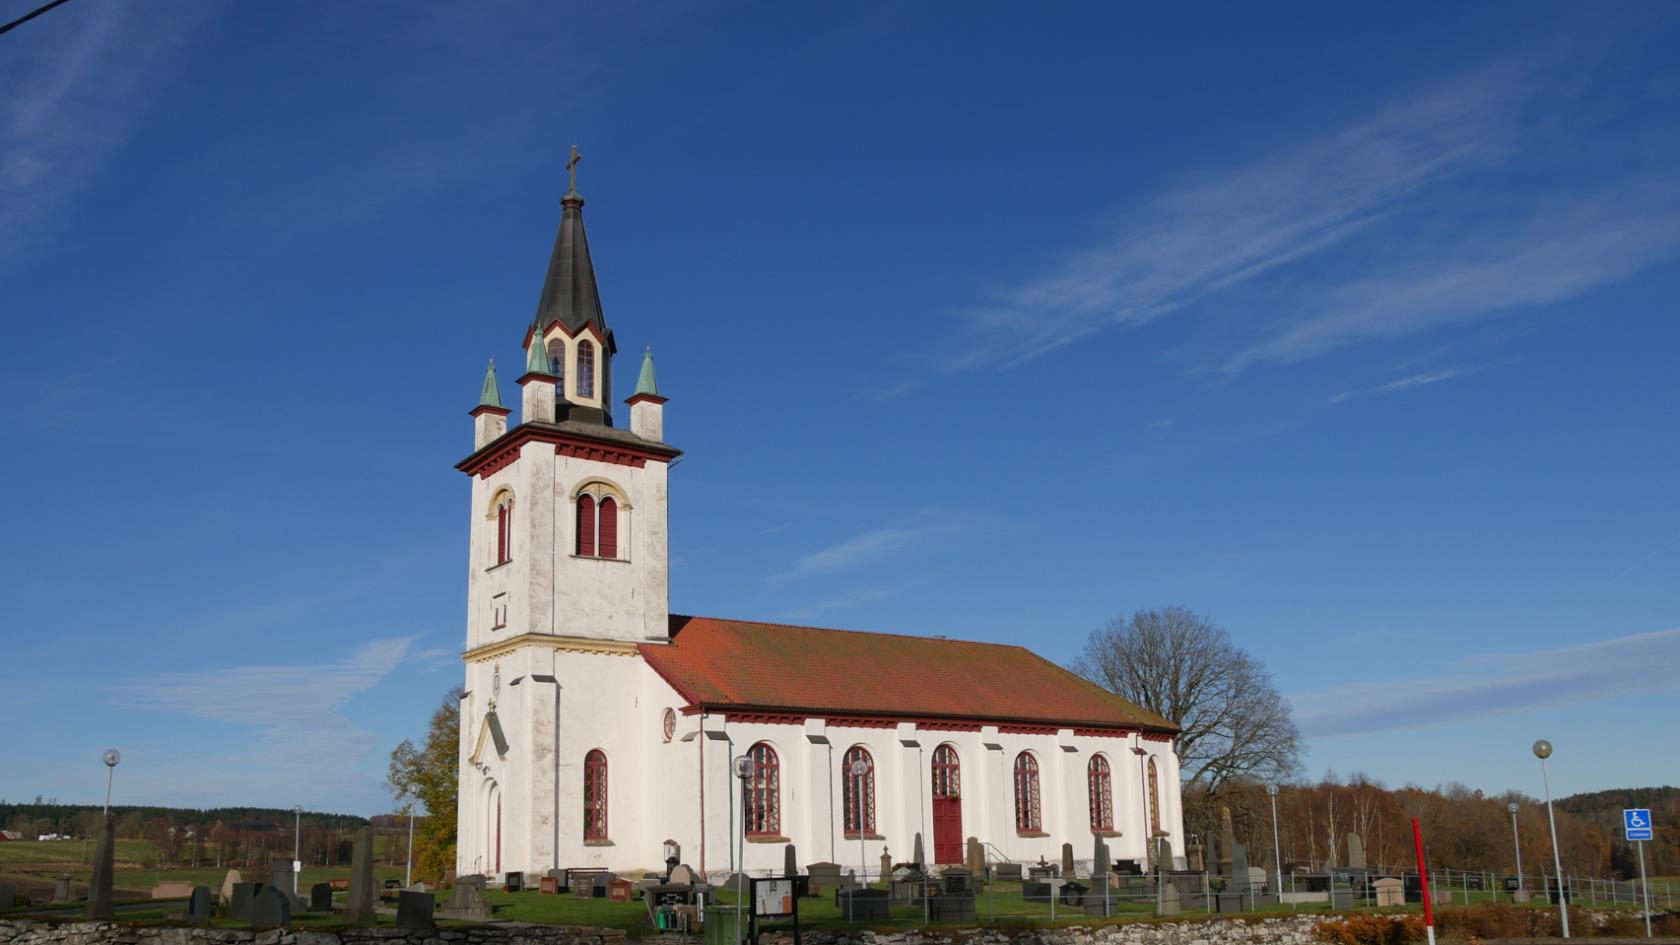 Fotskäls kyrka